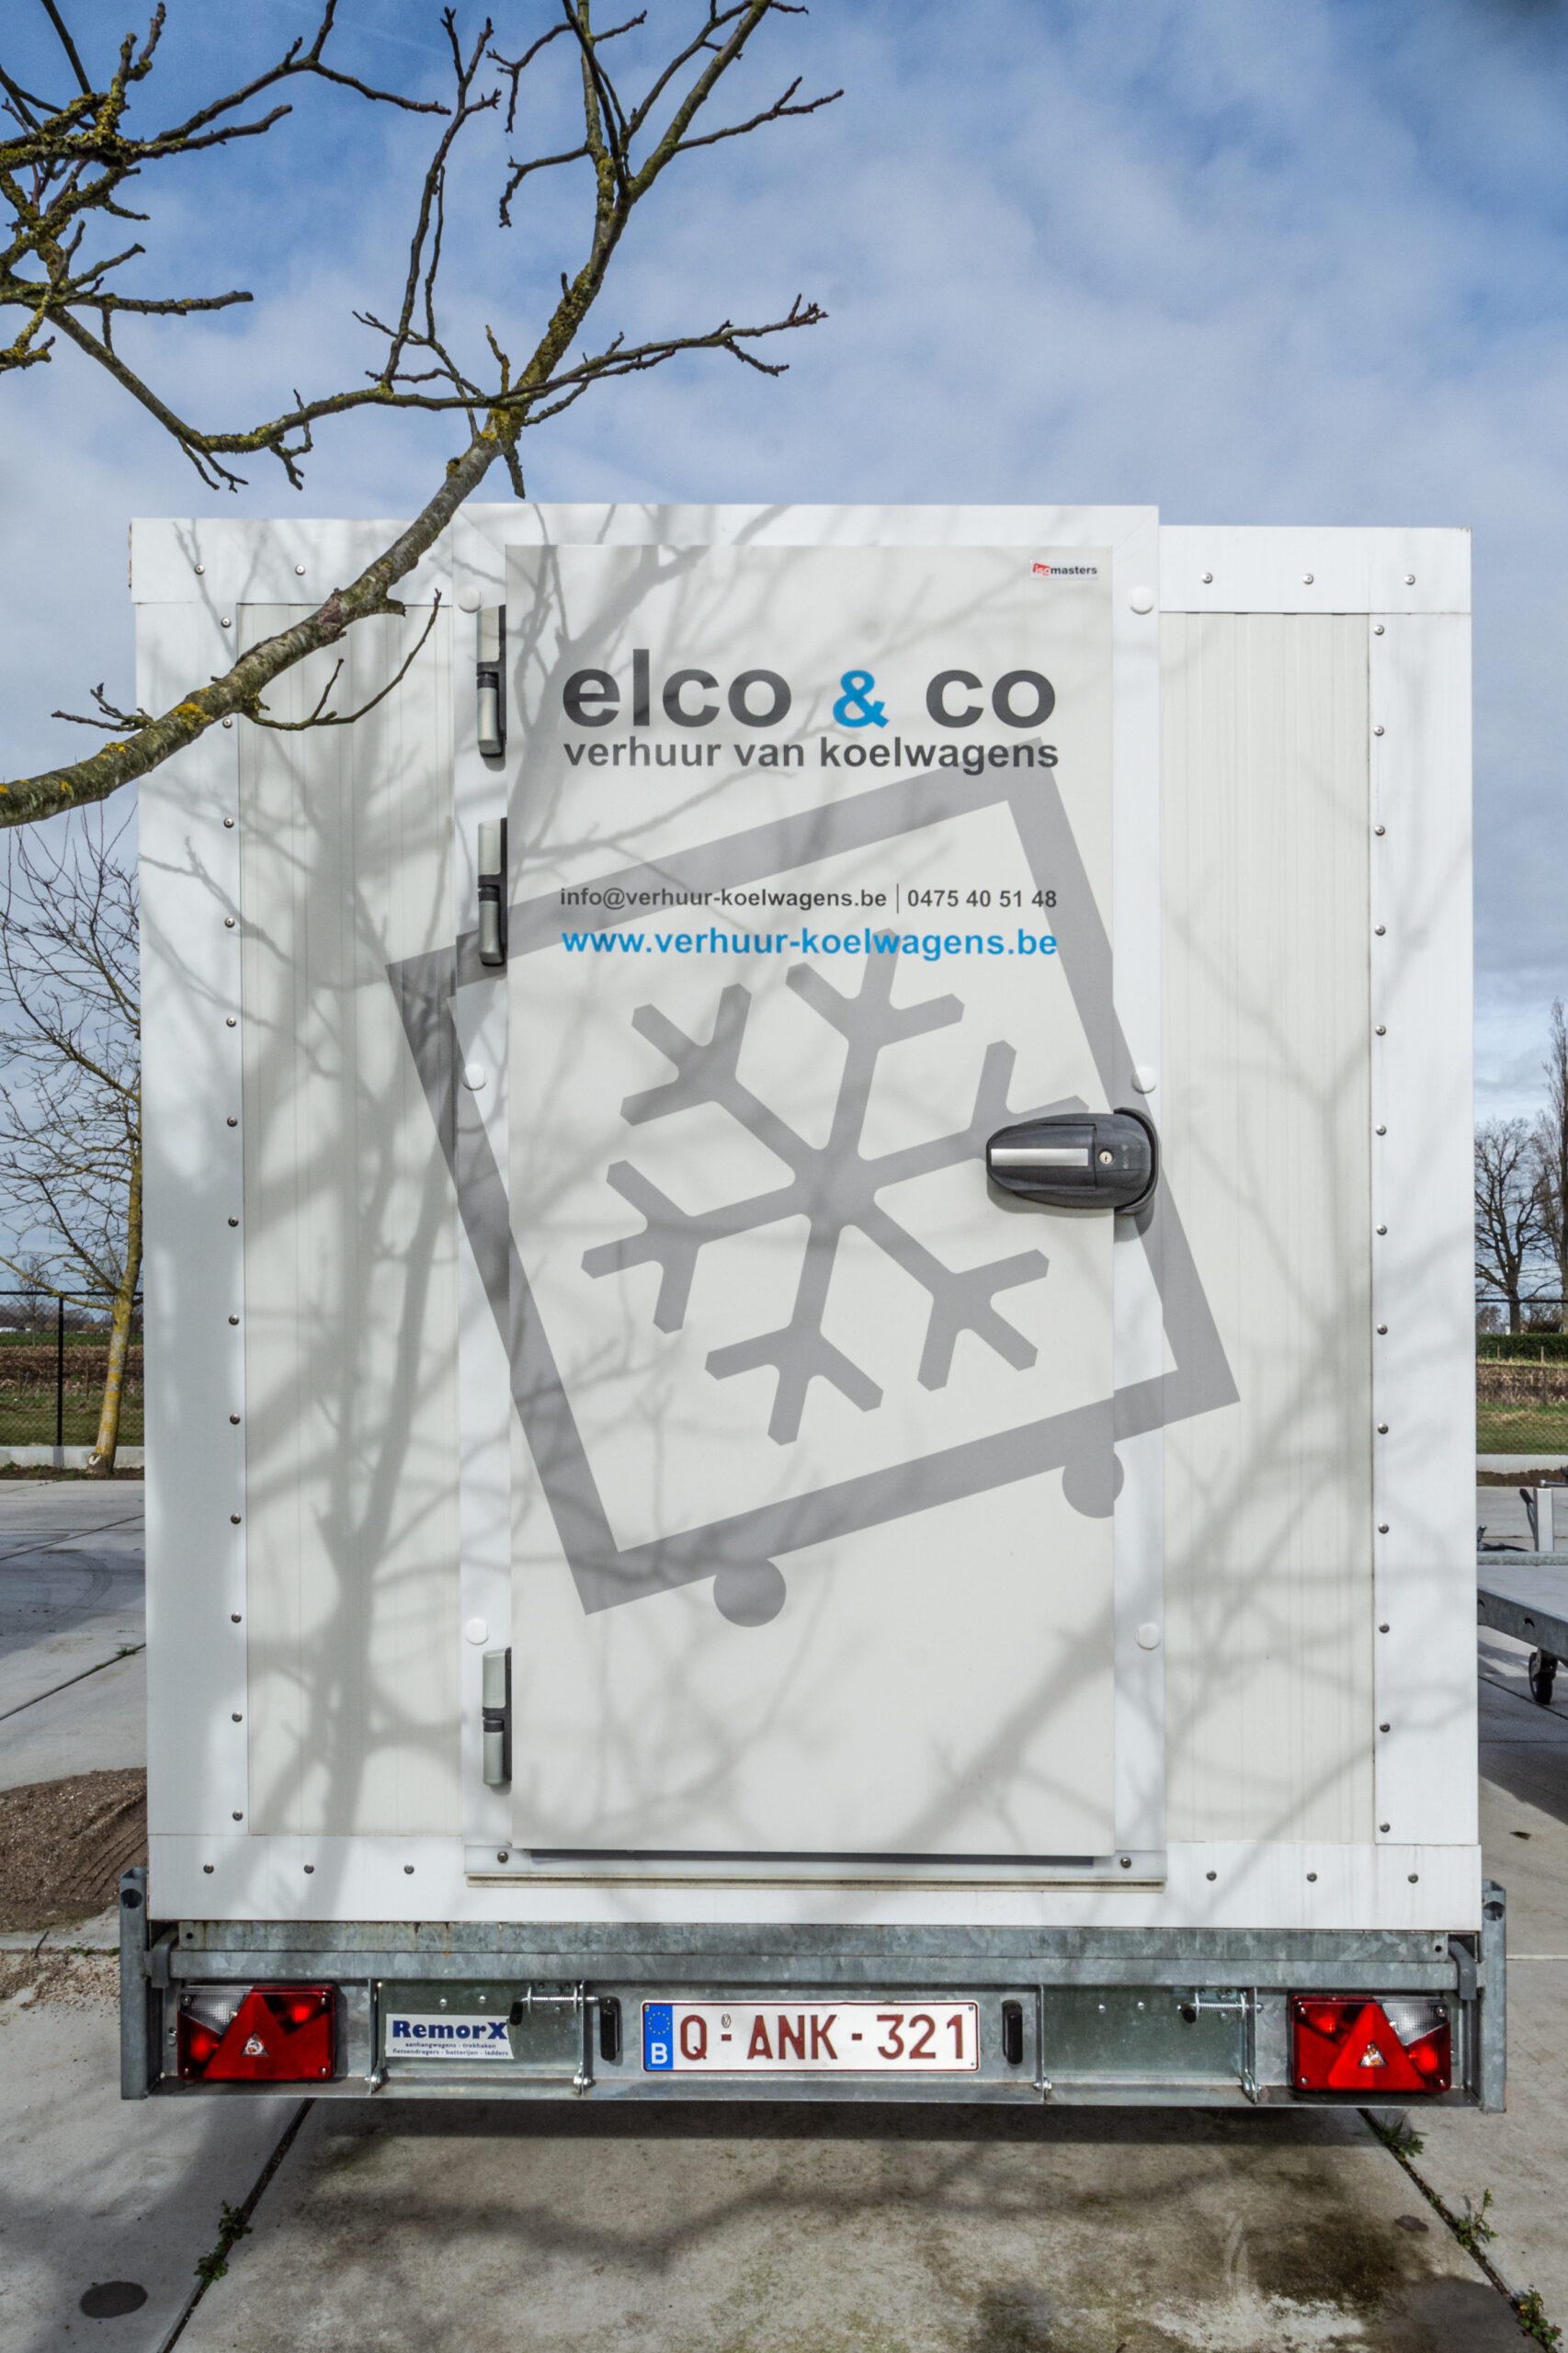 Elco & co - Verhuur van koelwagens